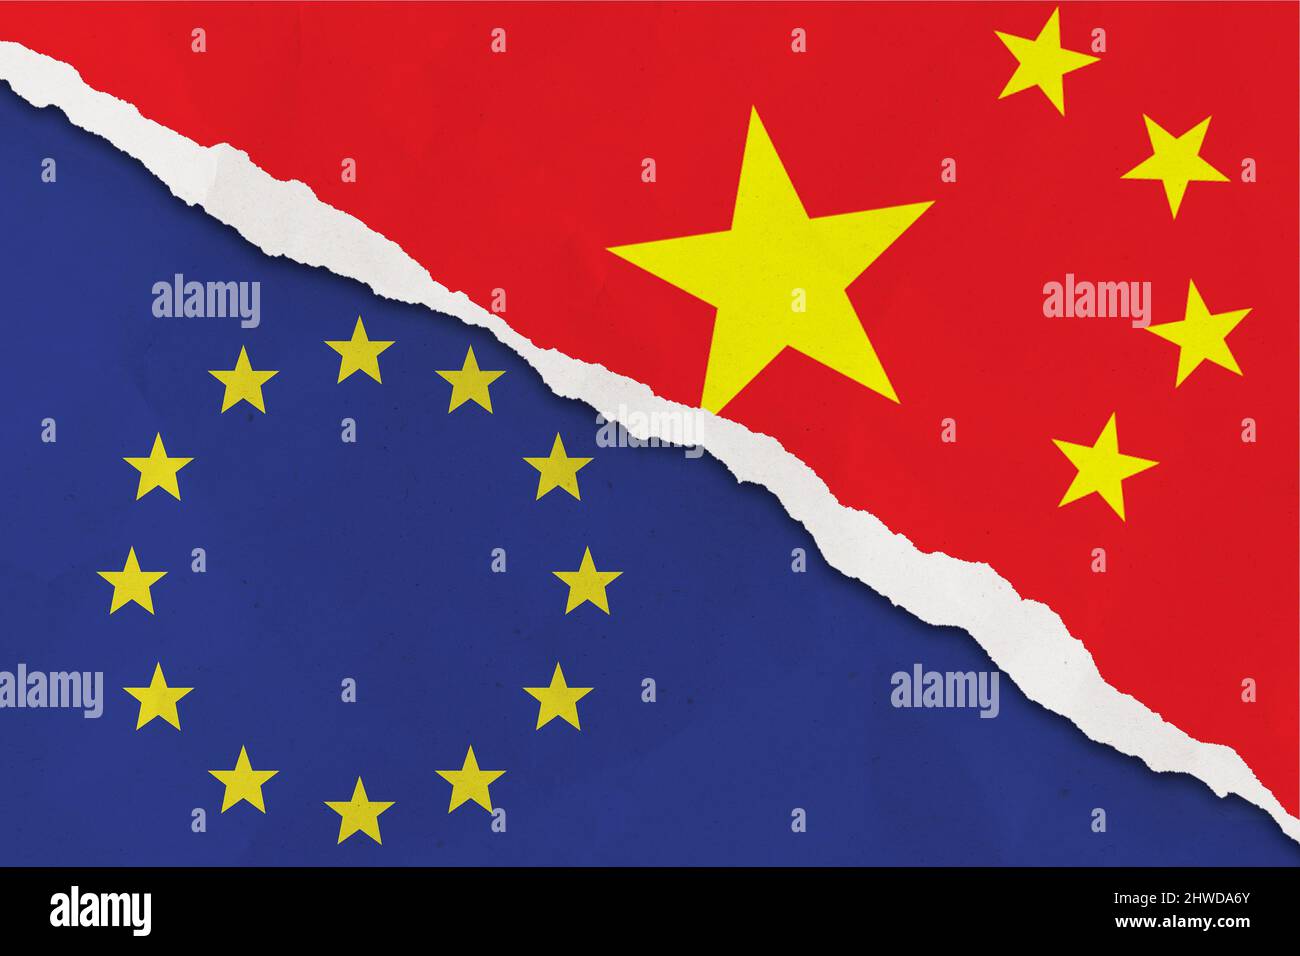 Le drapeau de la Chine et de l'Union européenne sur fond de papier déchiré grunge. Le concept de relation entre l'UE et la Chine Banque D'Images